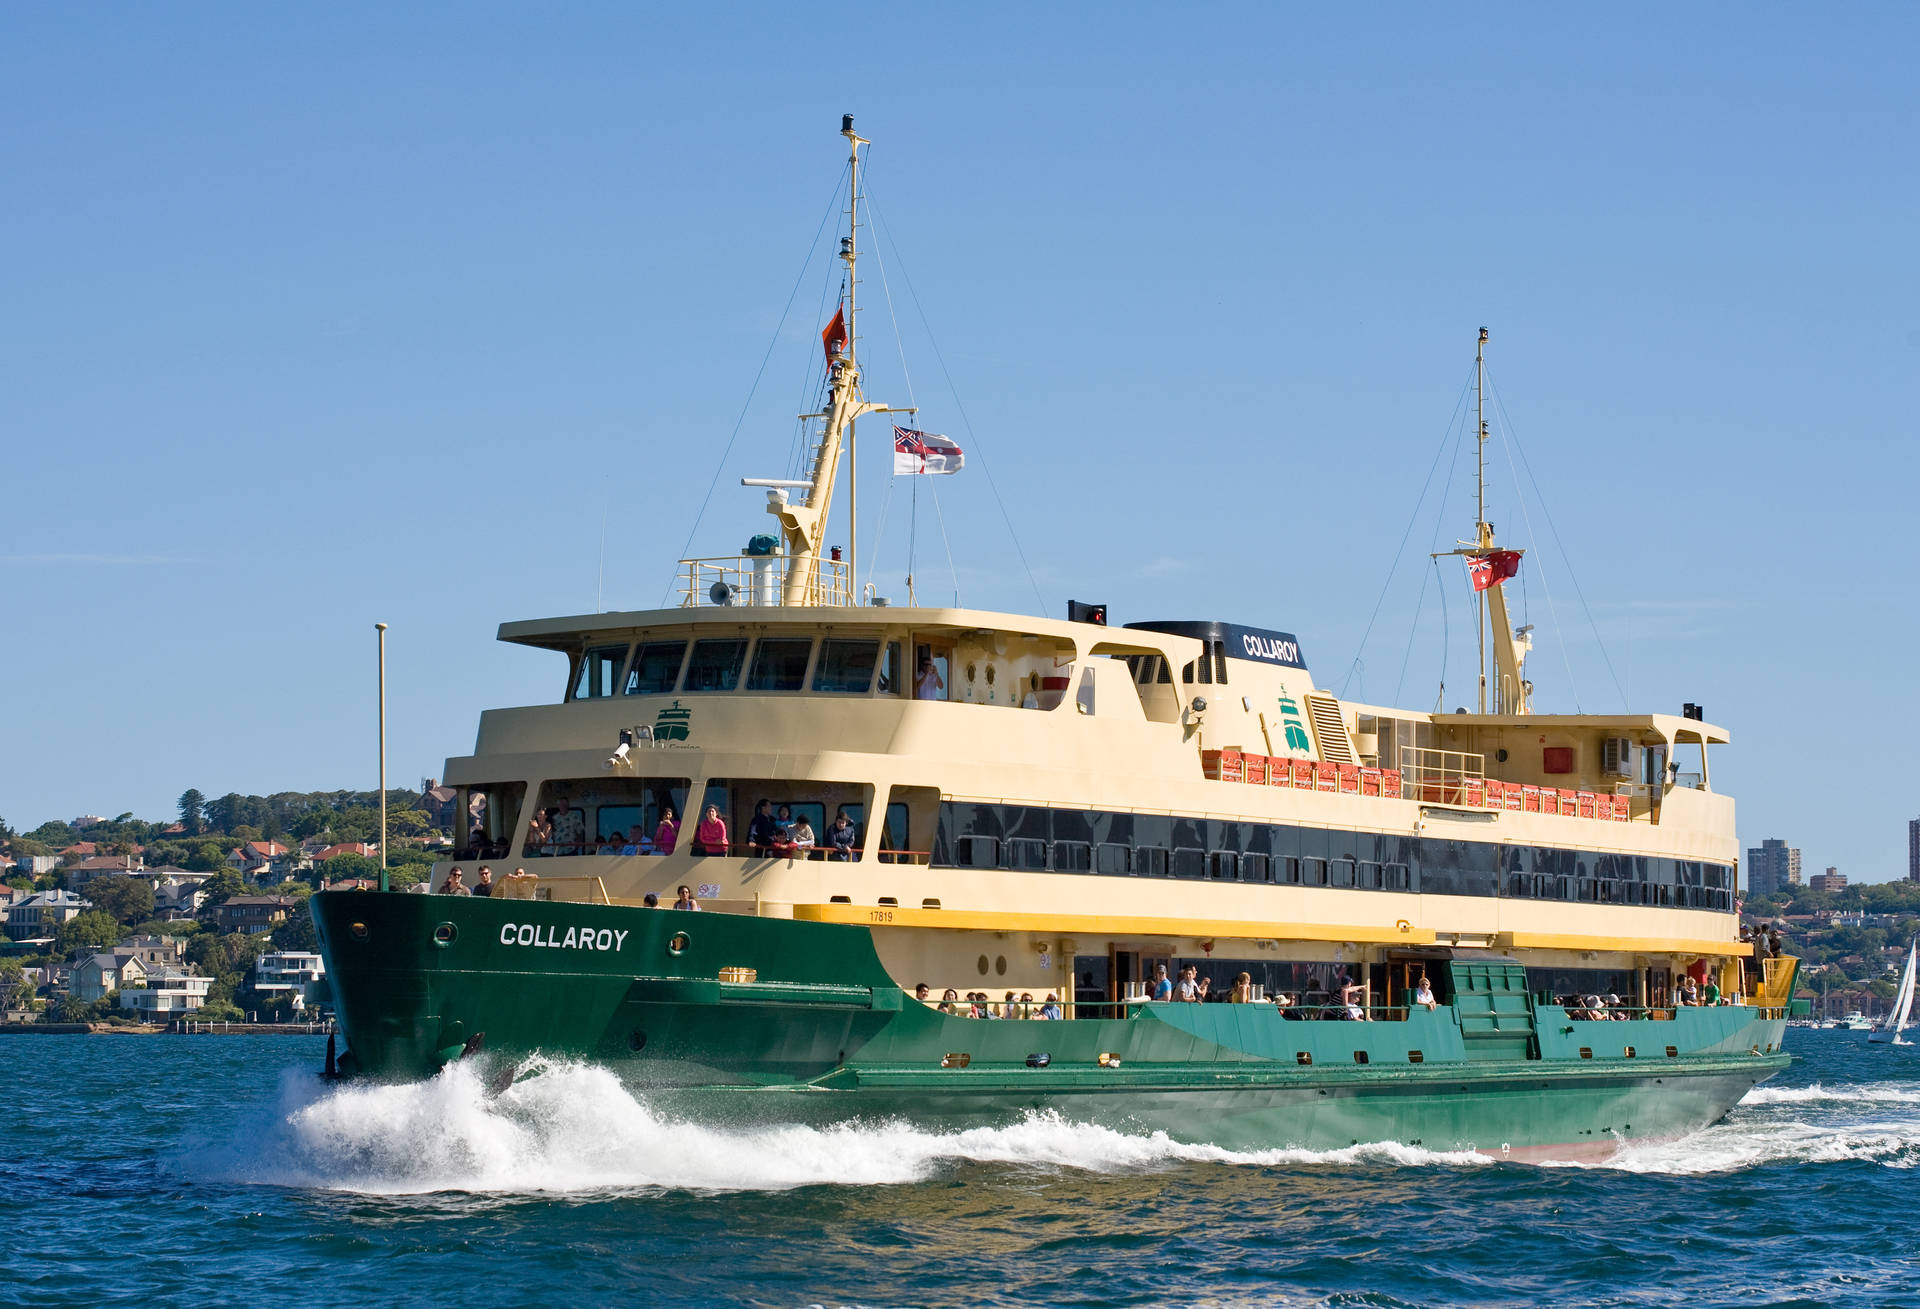 Sydney Manly Ferry Trip